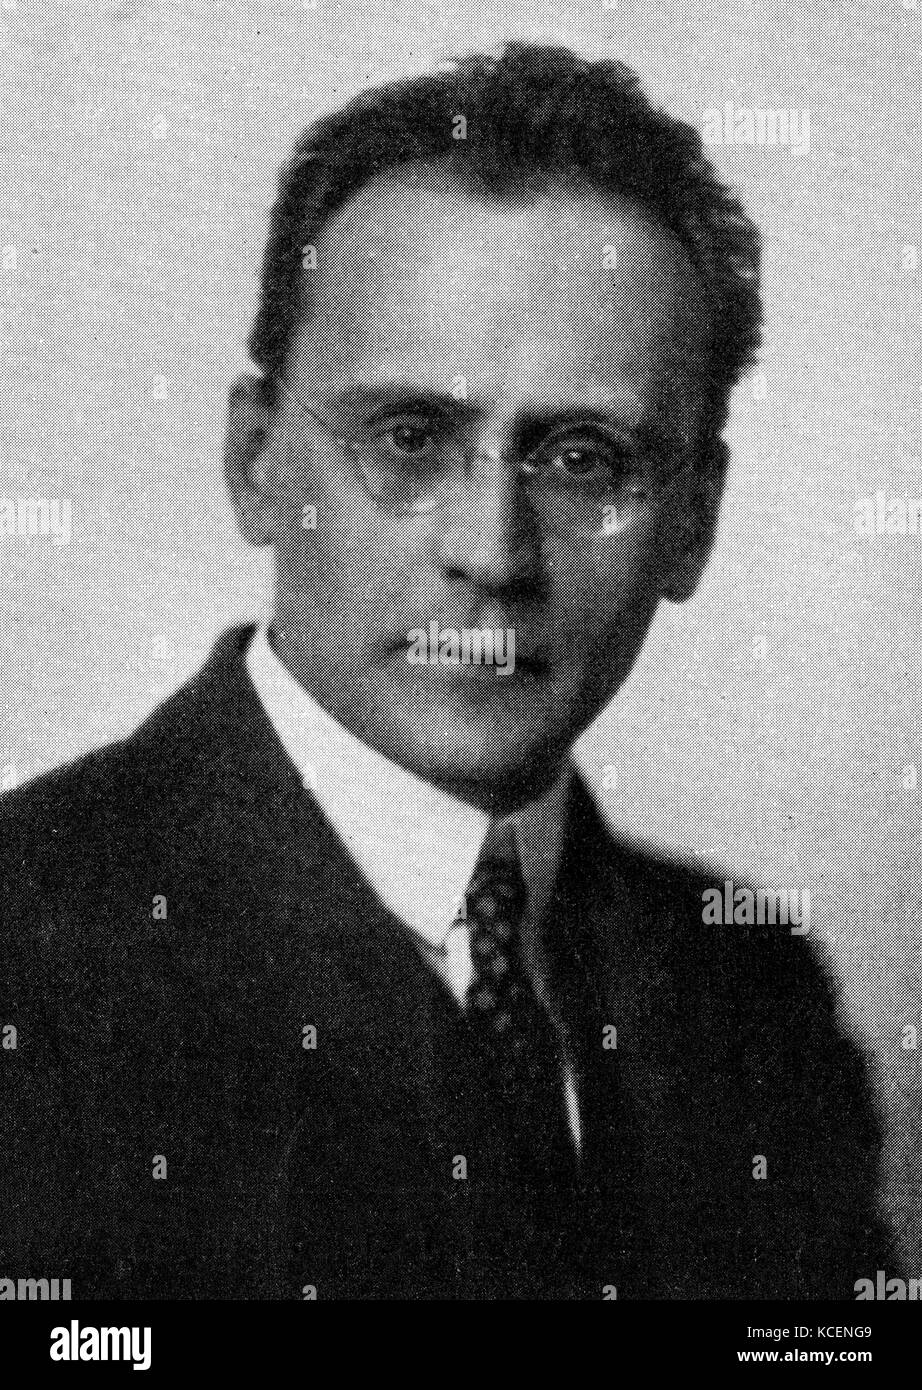 Foto von Anton Webern (1883-1945), österreichischer Komponist und Dirigent.  Vom 20. Jahrhundert Stockfotografie - Alamy